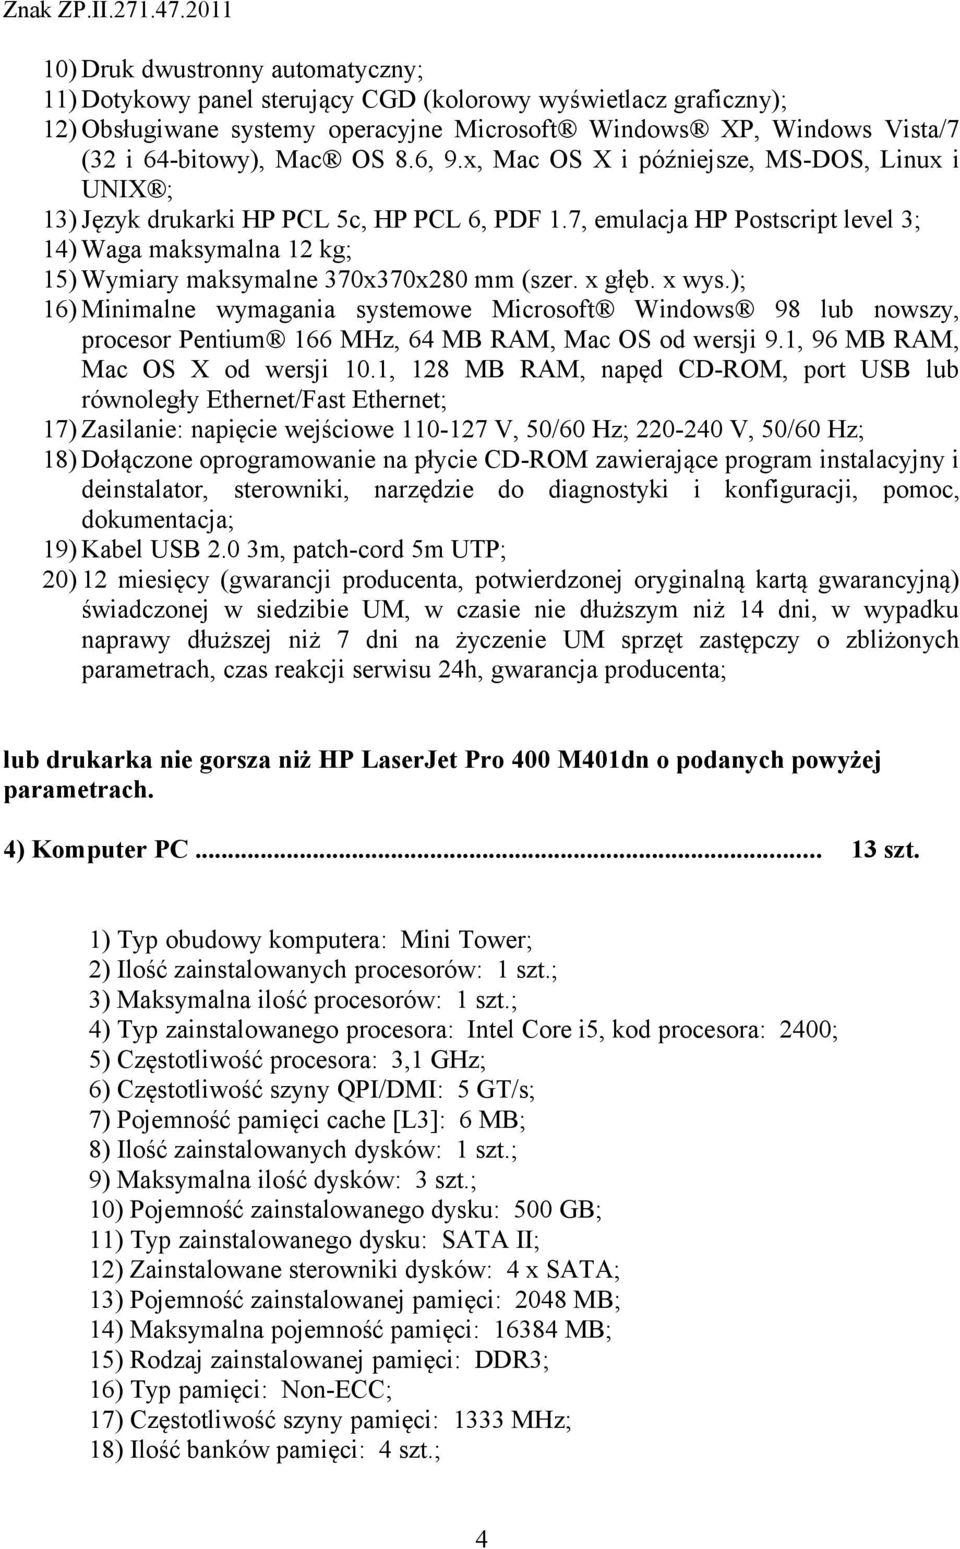 7, emulacja HP Postscript level 3; 14) Waga maksymalna 12 kg; 15) Wymiary maksymalne 370x370x280 mm (szer. x głęb. x wys.